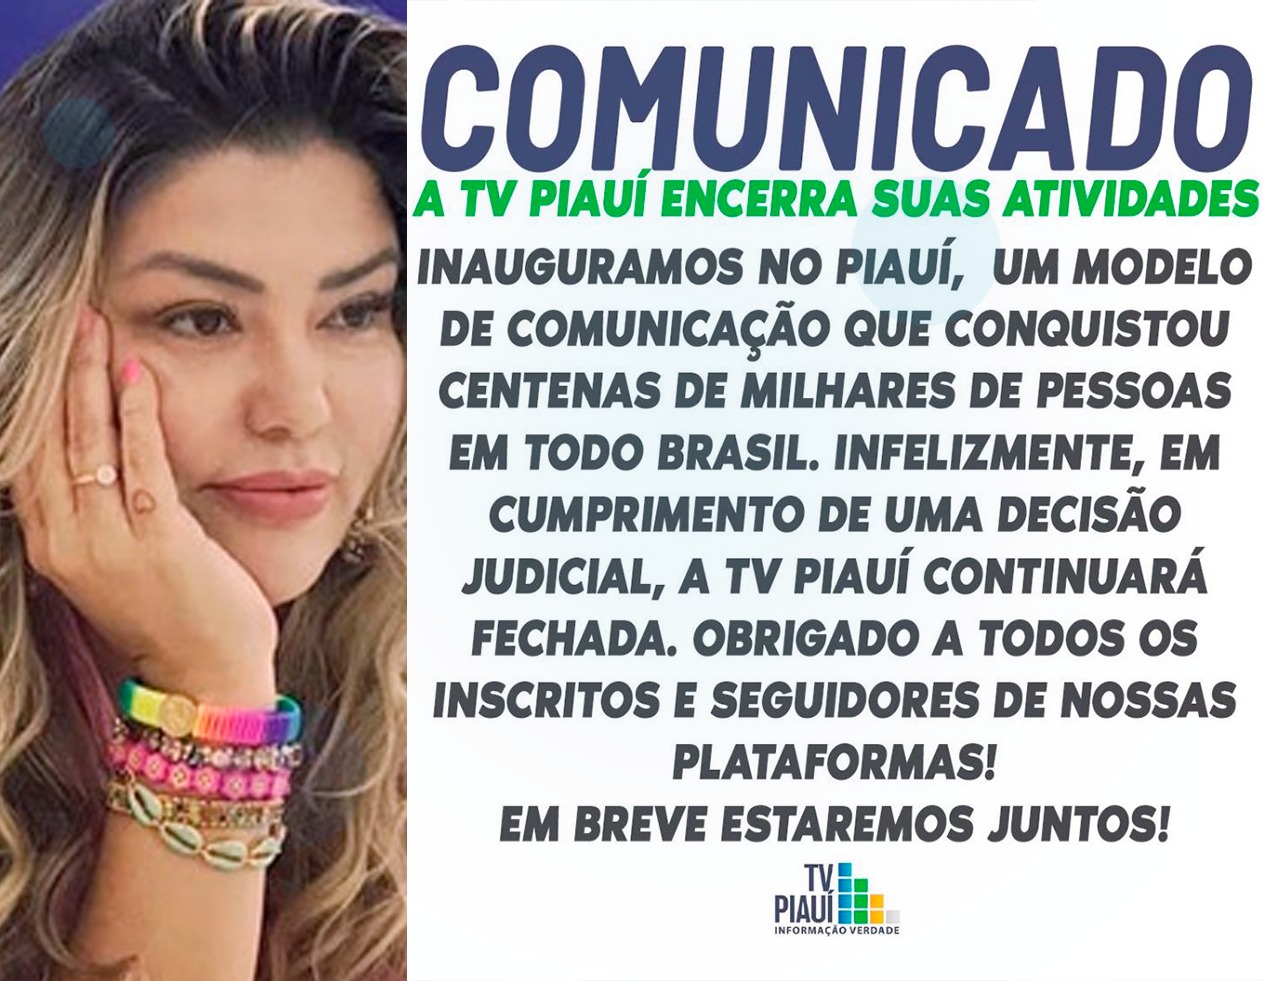 Samantha Cavalca divulga encerramento das atividades da TV Piauí